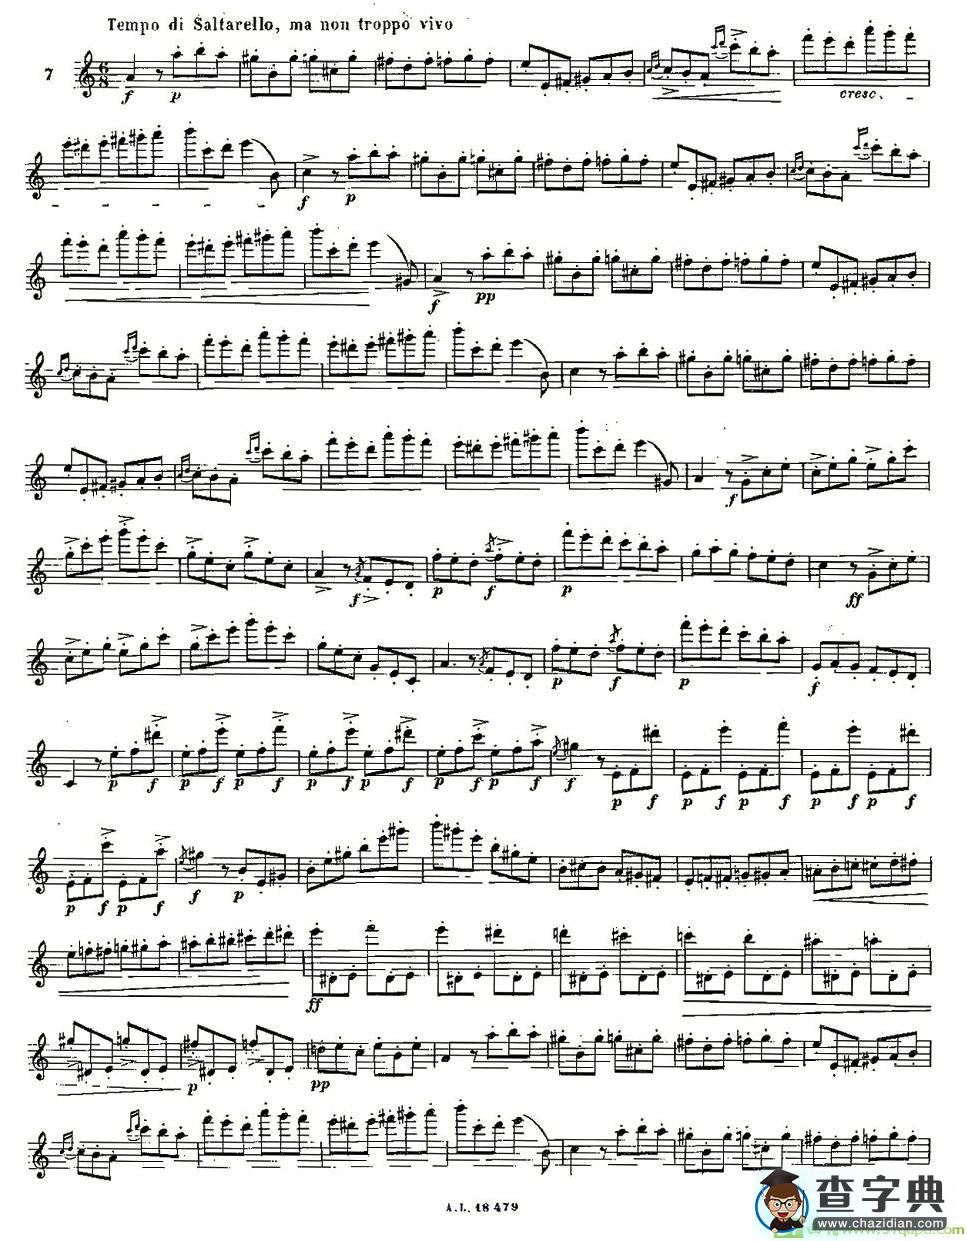 基于维尼亚夫斯基练习曲的10首长笛练习曲之7长笛谱(莫伊斯Moyse作曲)